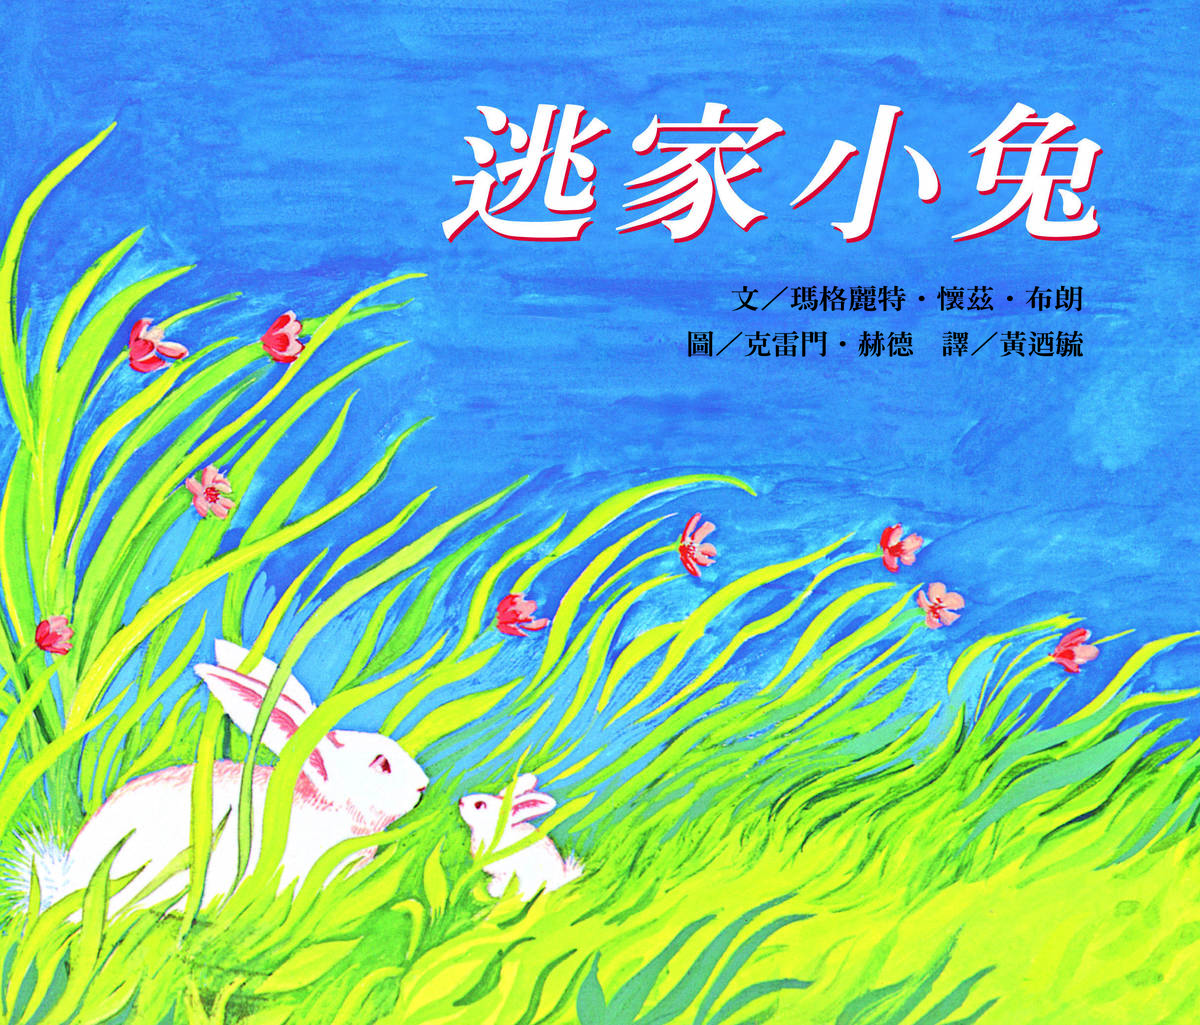 信誼_NTSO繪本音樂會首場在5月20日開演以經典繪本逃家小兔為題詮釋媽媽的愛與偉大 (信誼提供)